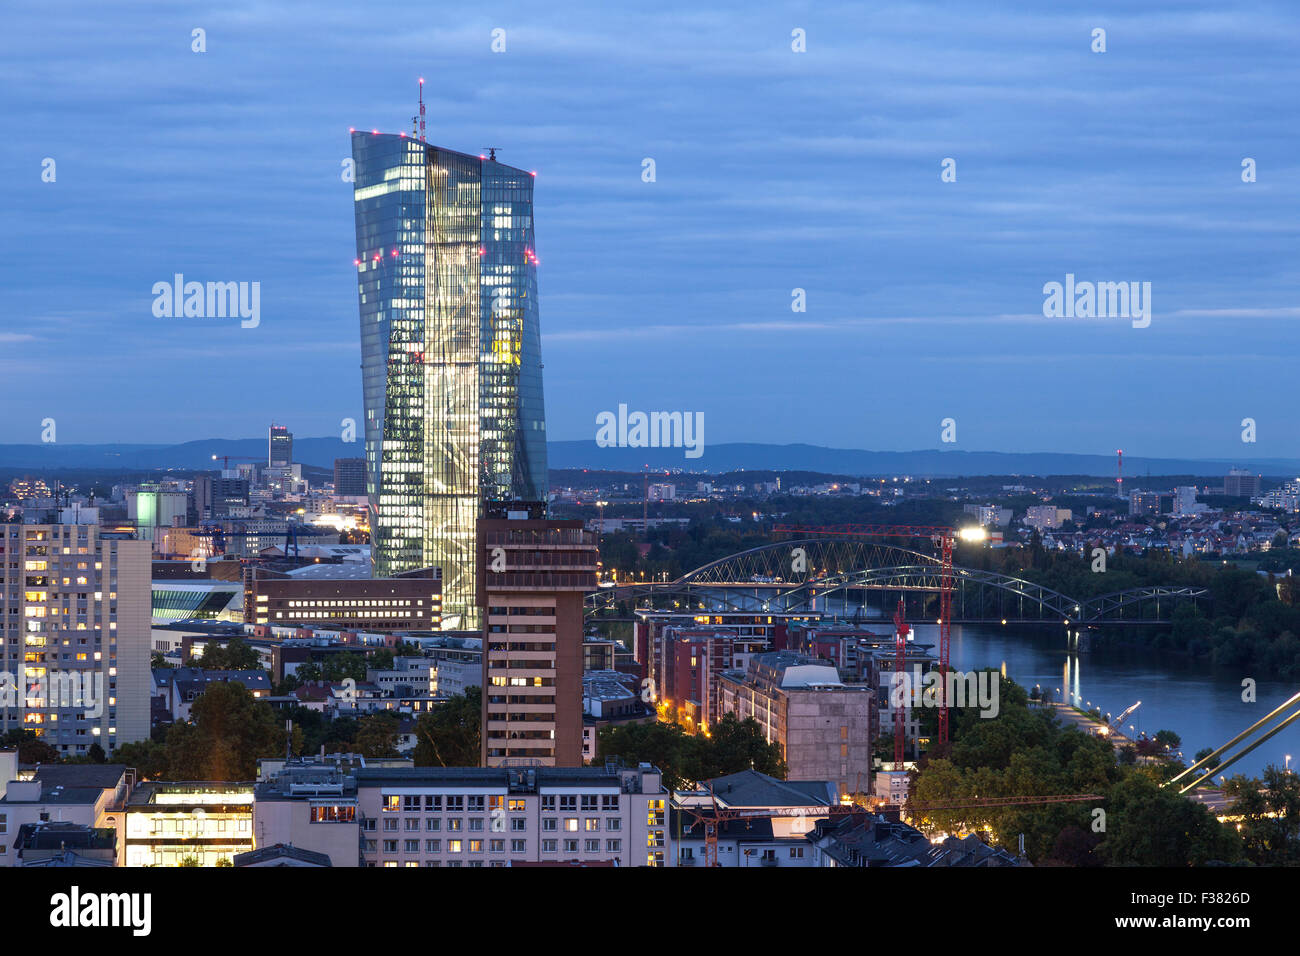 Banca centrale europea (BCE) nella città di Francoforte sul Meno di notte, Germania Foto Stock